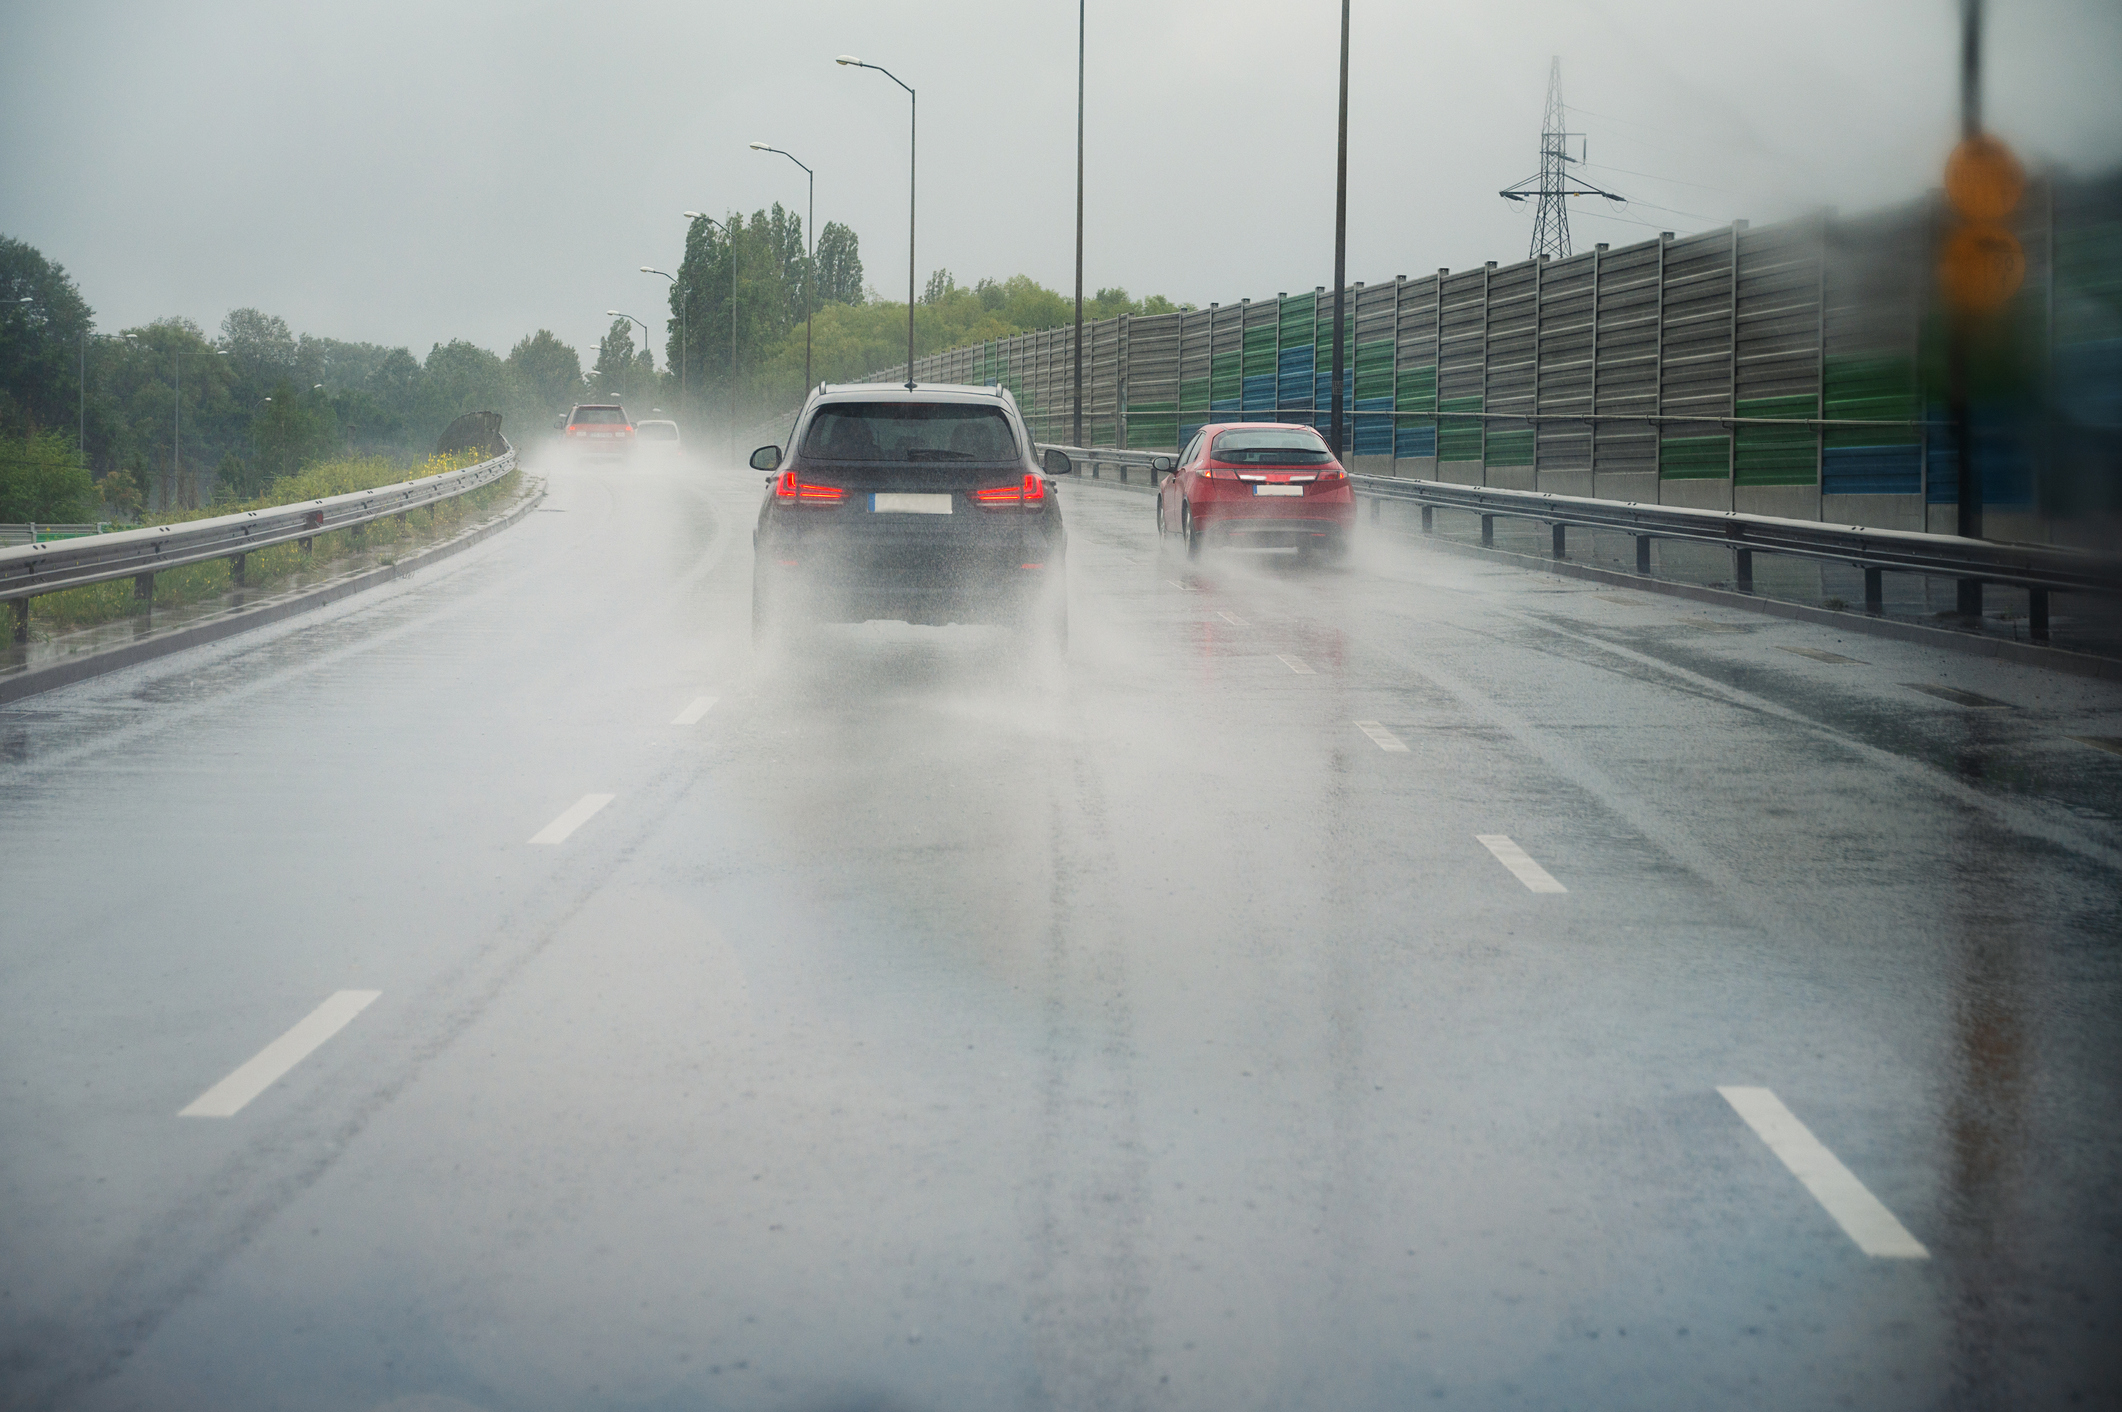 Τι πρέπει να προσέχουμε όταν οδηγούμε με βροχή και έντονη ολισθηρότητα